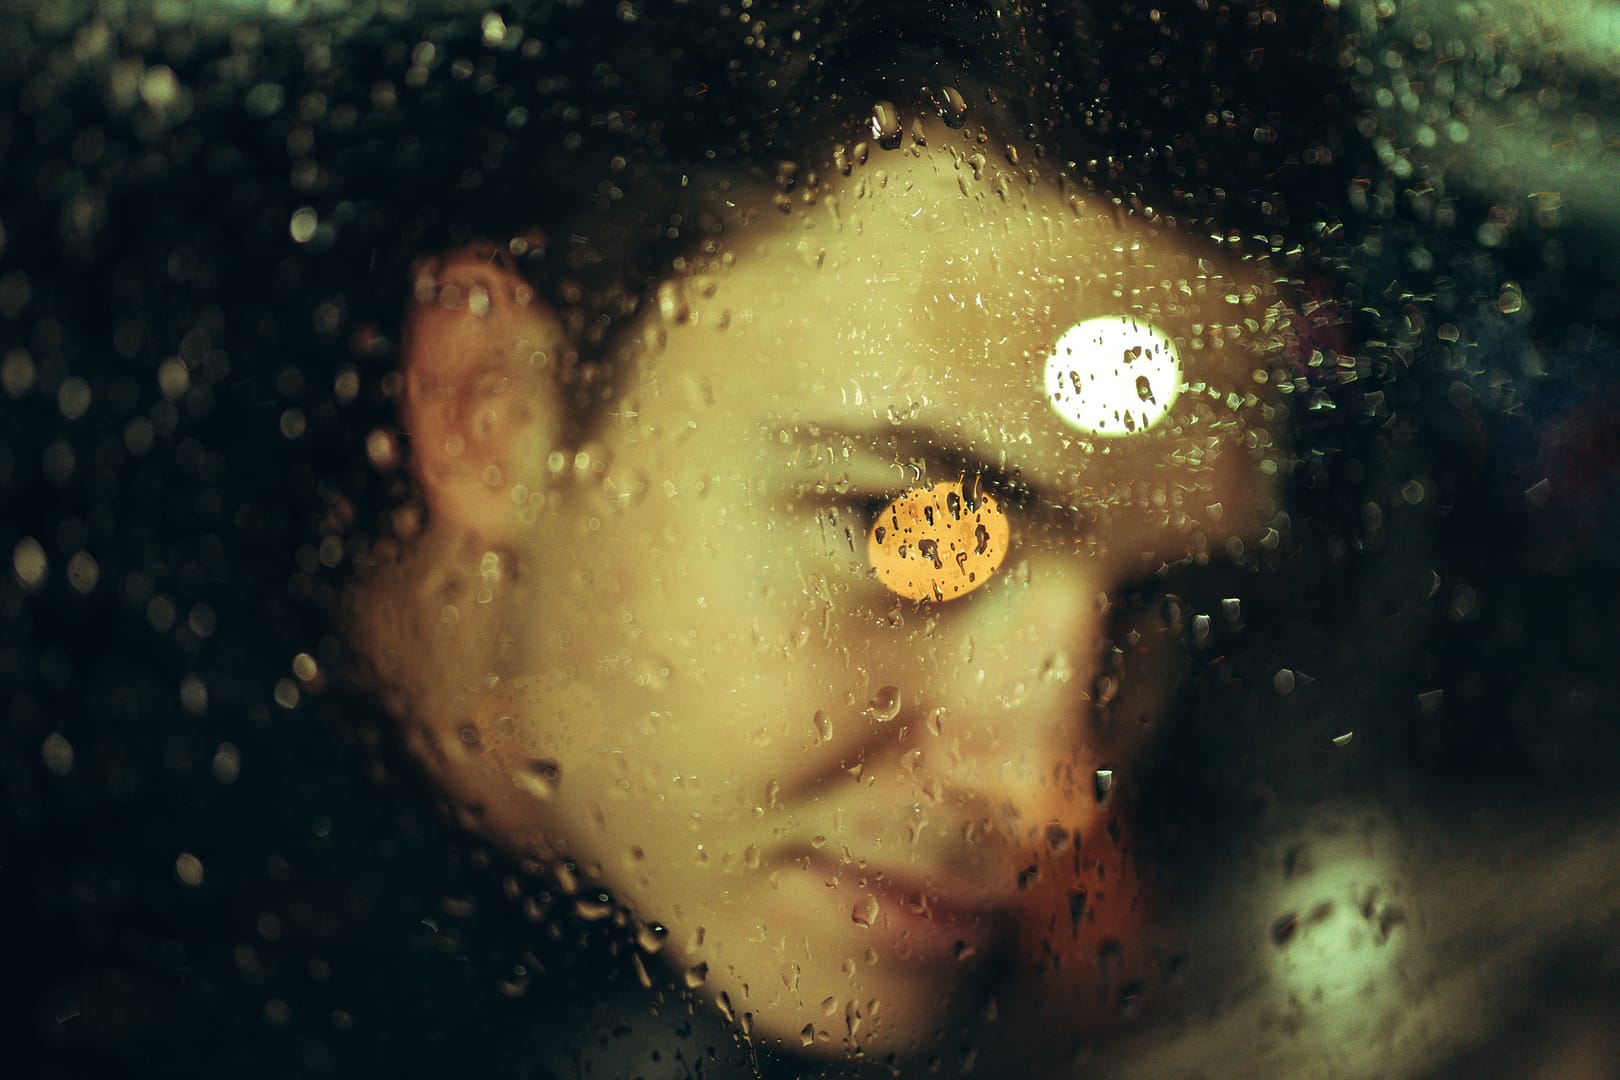 Male model in side car behind rainy window